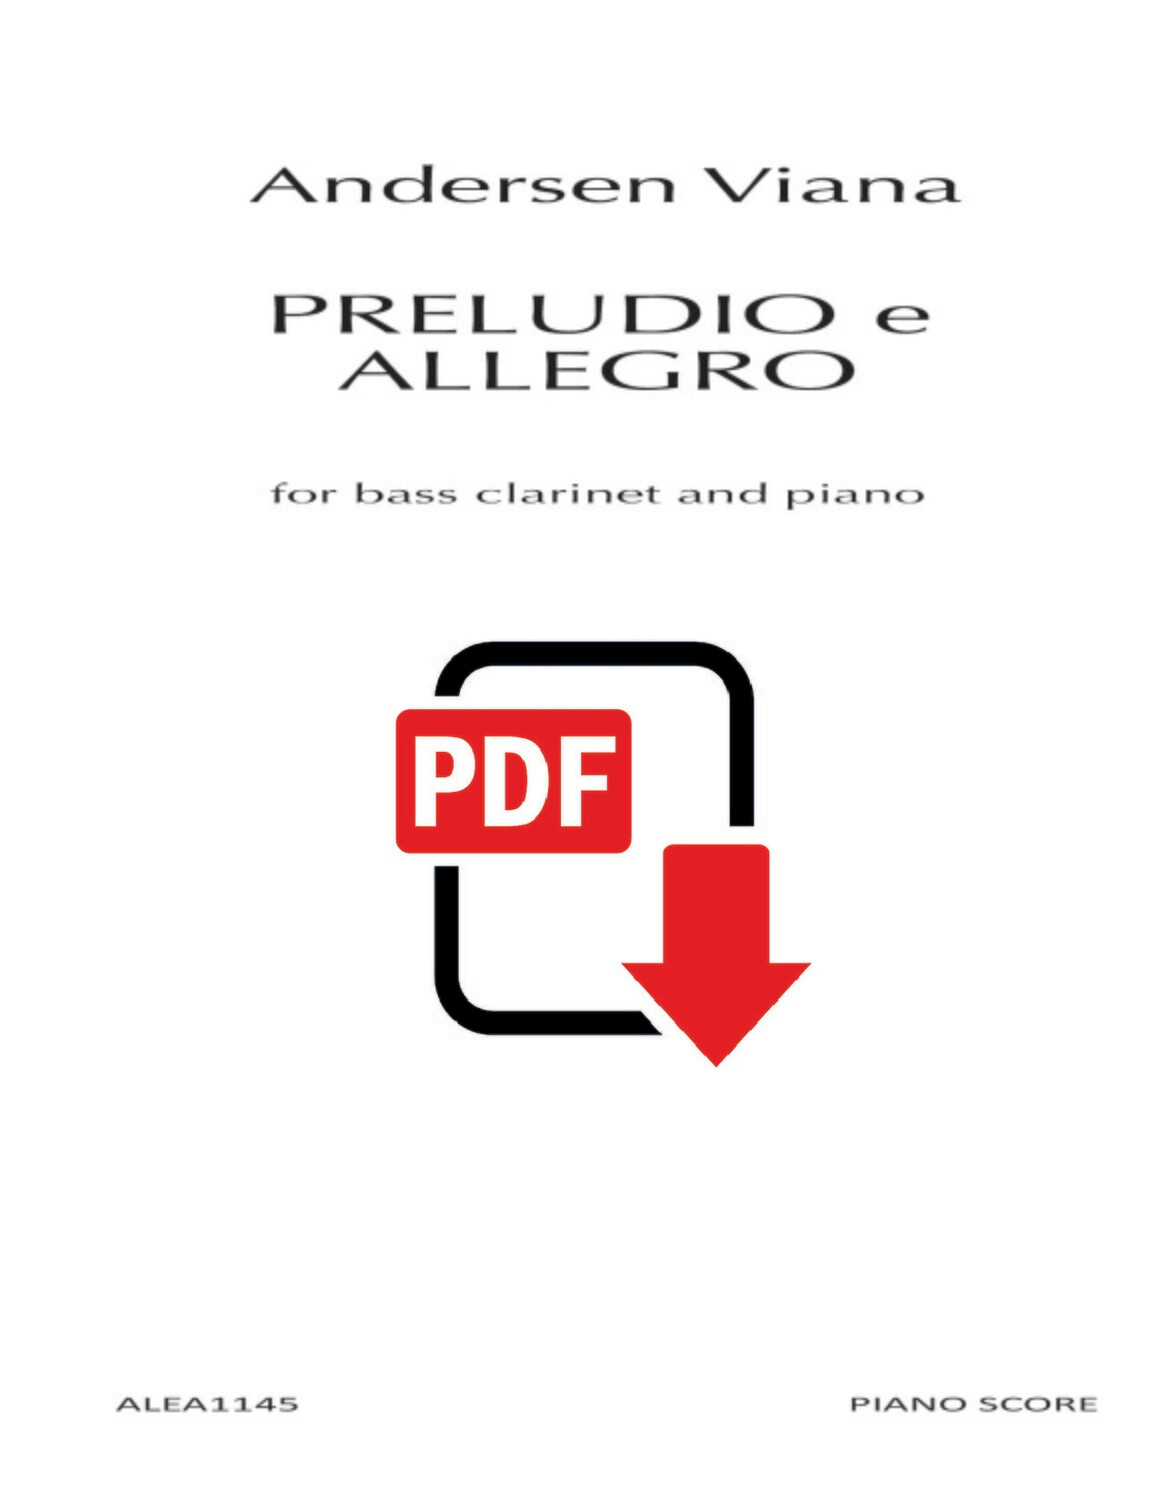 Viana: PRELUDIO e ALLEGRO for Bass Clarinet and Piano (PDF)